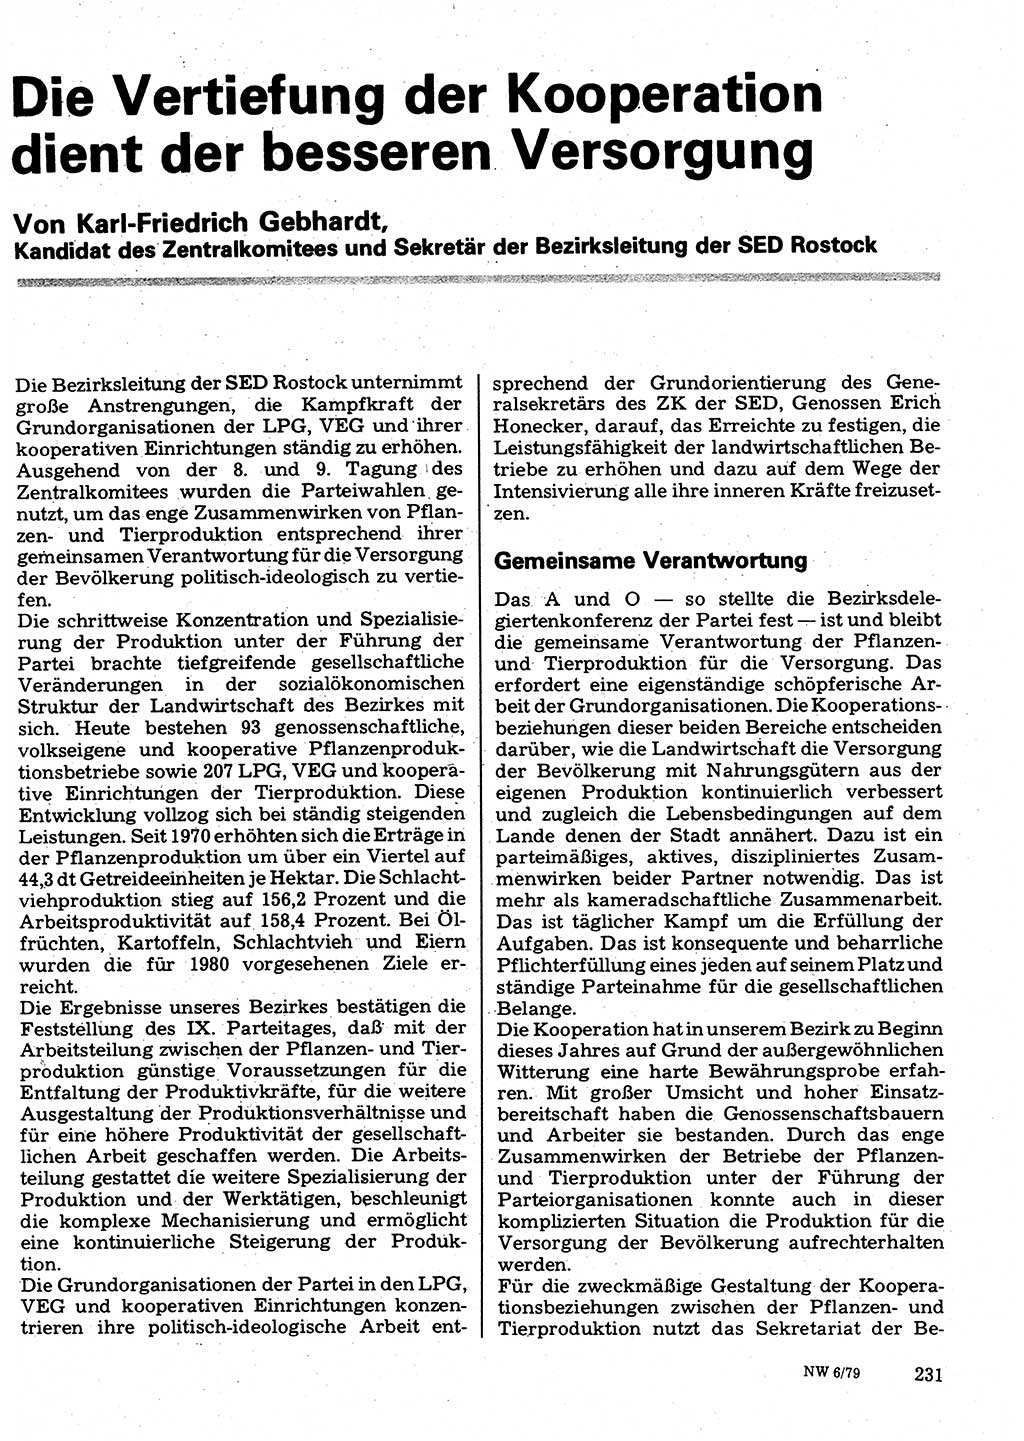 Neuer Weg (NW), Organ des Zentralkomitees (ZK) der SED (Sozialistische Einheitspartei Deutschlands) für Fragen des Parteilebens, 34. Jahrgang [Deutsche Demokratische Republik (DDR)] 1979, Seite 231 (NW ZK SED DDR 1979, S. 231)